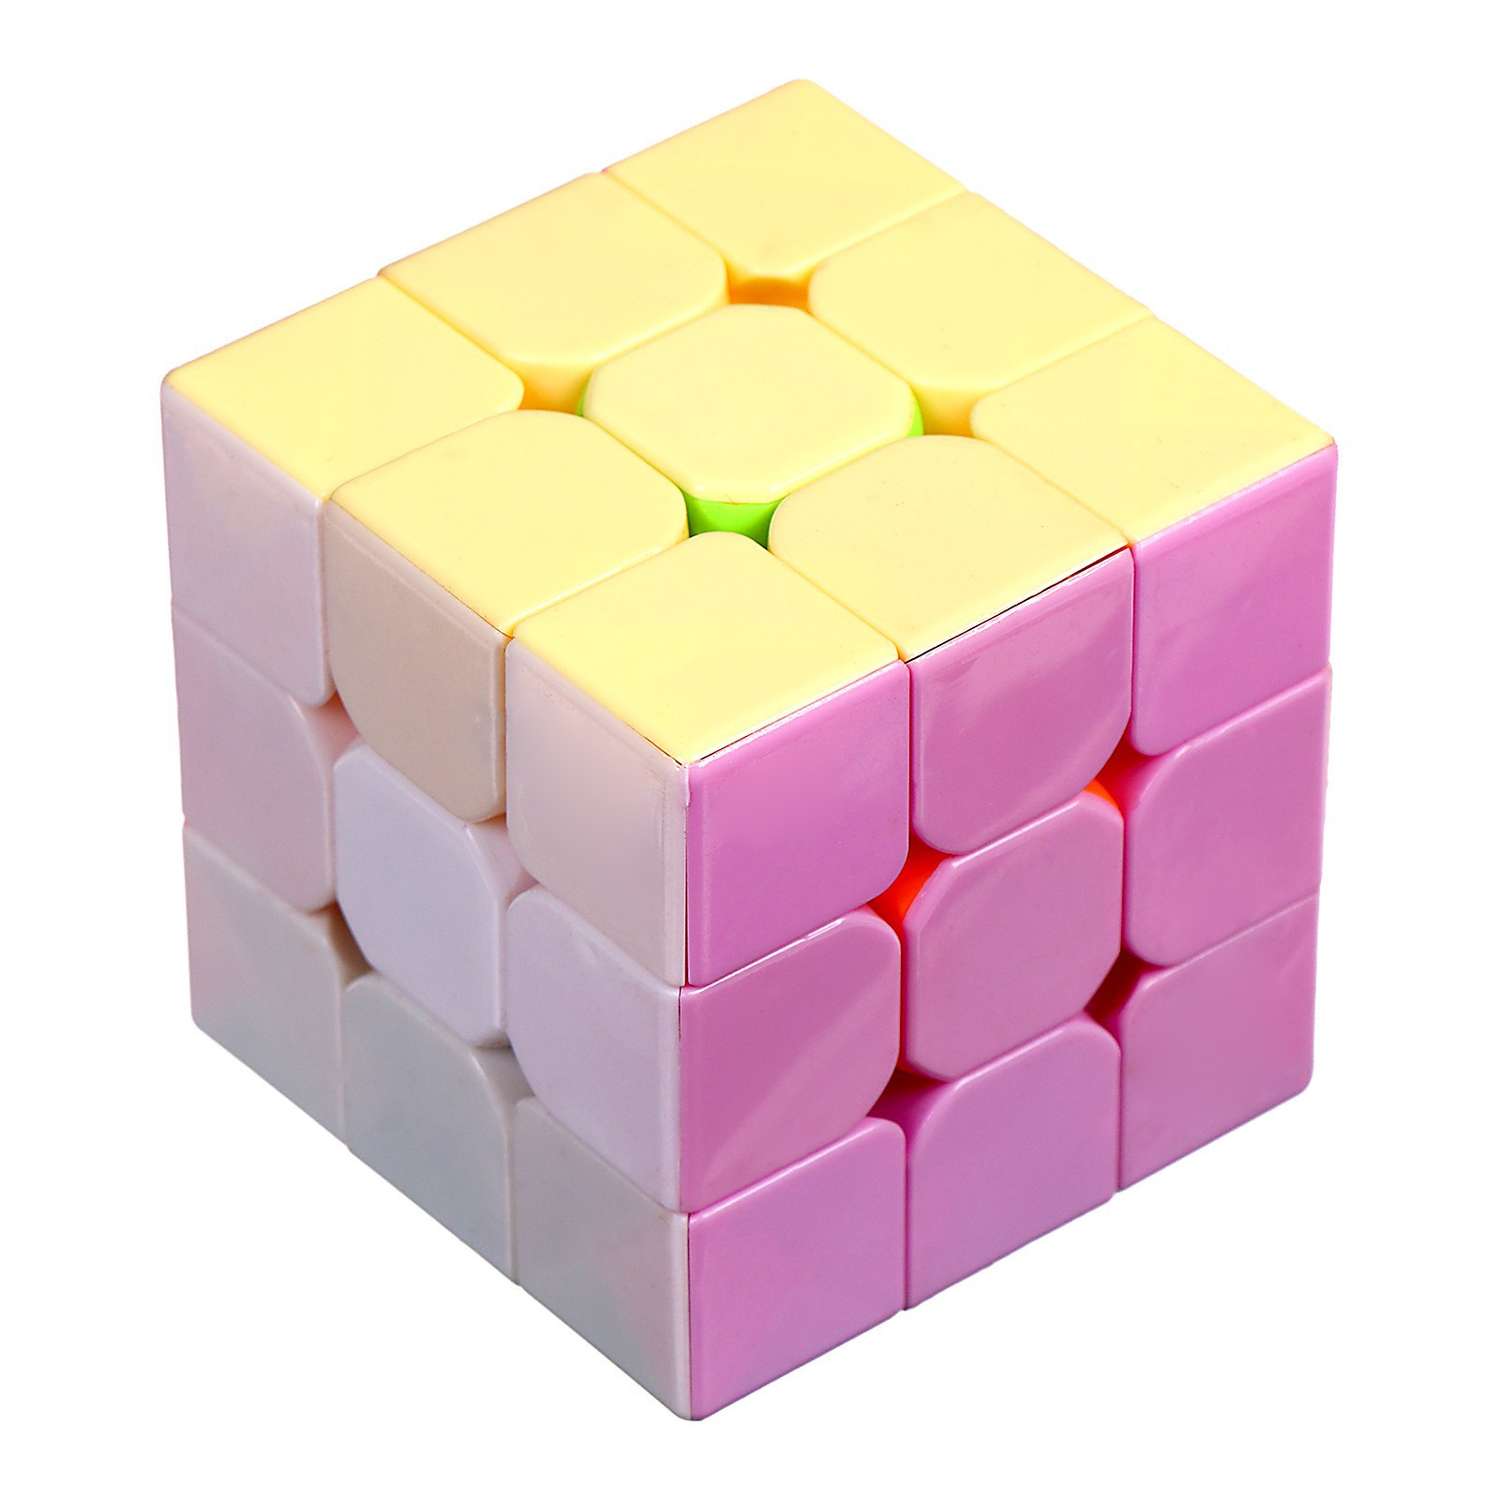 Игрушка Sima-Land механическая «Кубик» 5 5×5 5×5 5 см - фото 3